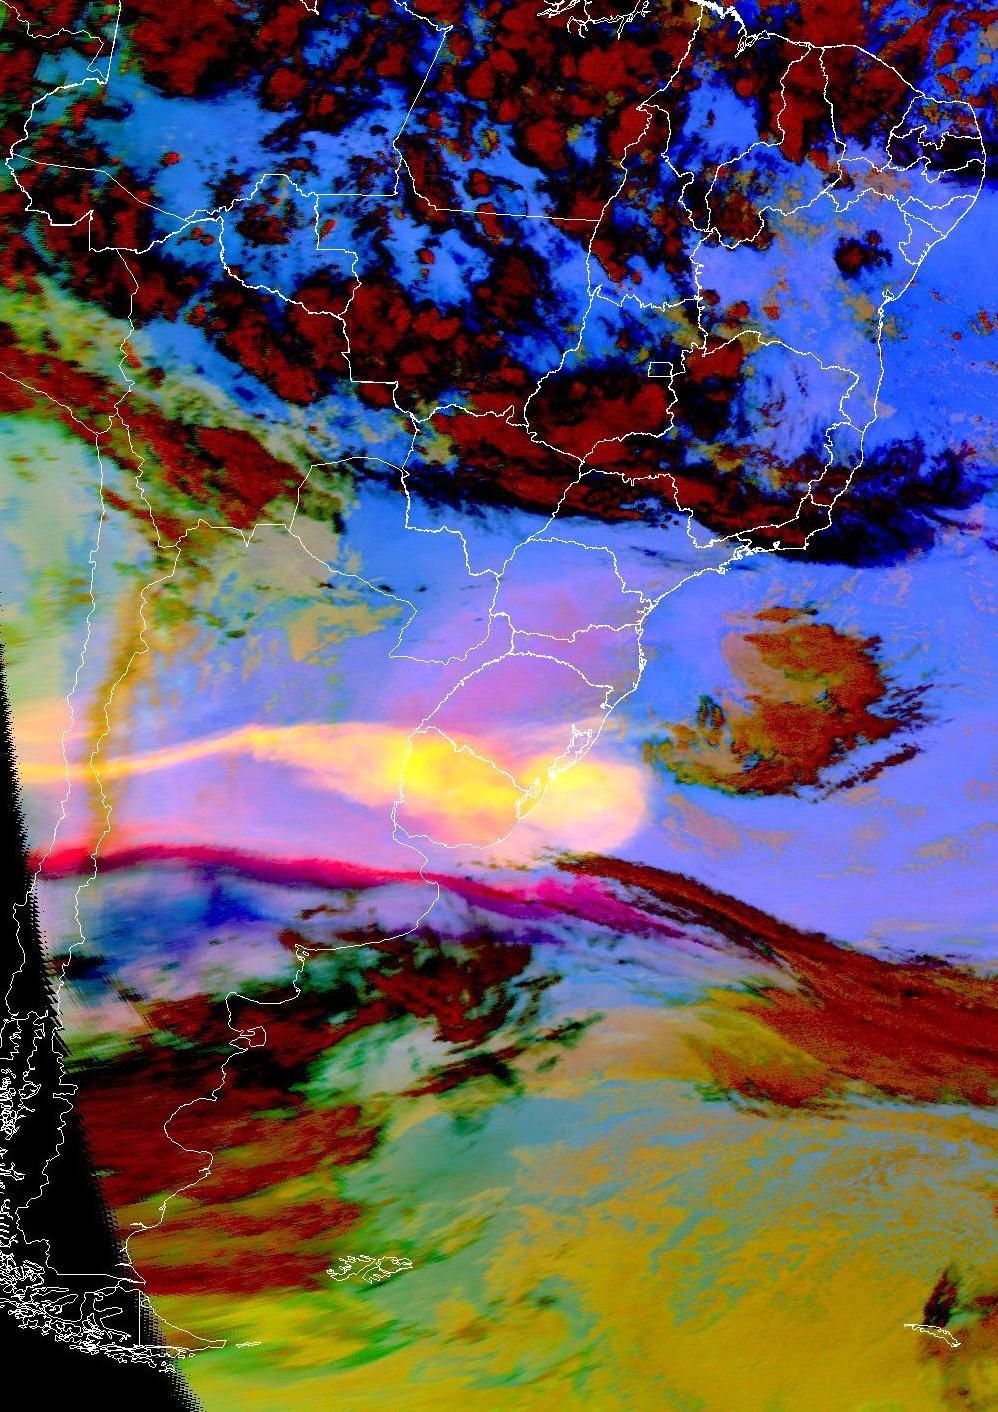 A nuvem de cinzas foi observada até o dia 27 de abril. A sequência de imagens na Figura 9 mostra o deslocamento das cinzas sobre a América do Sul, inicialmente para leste, e depois também para norte.